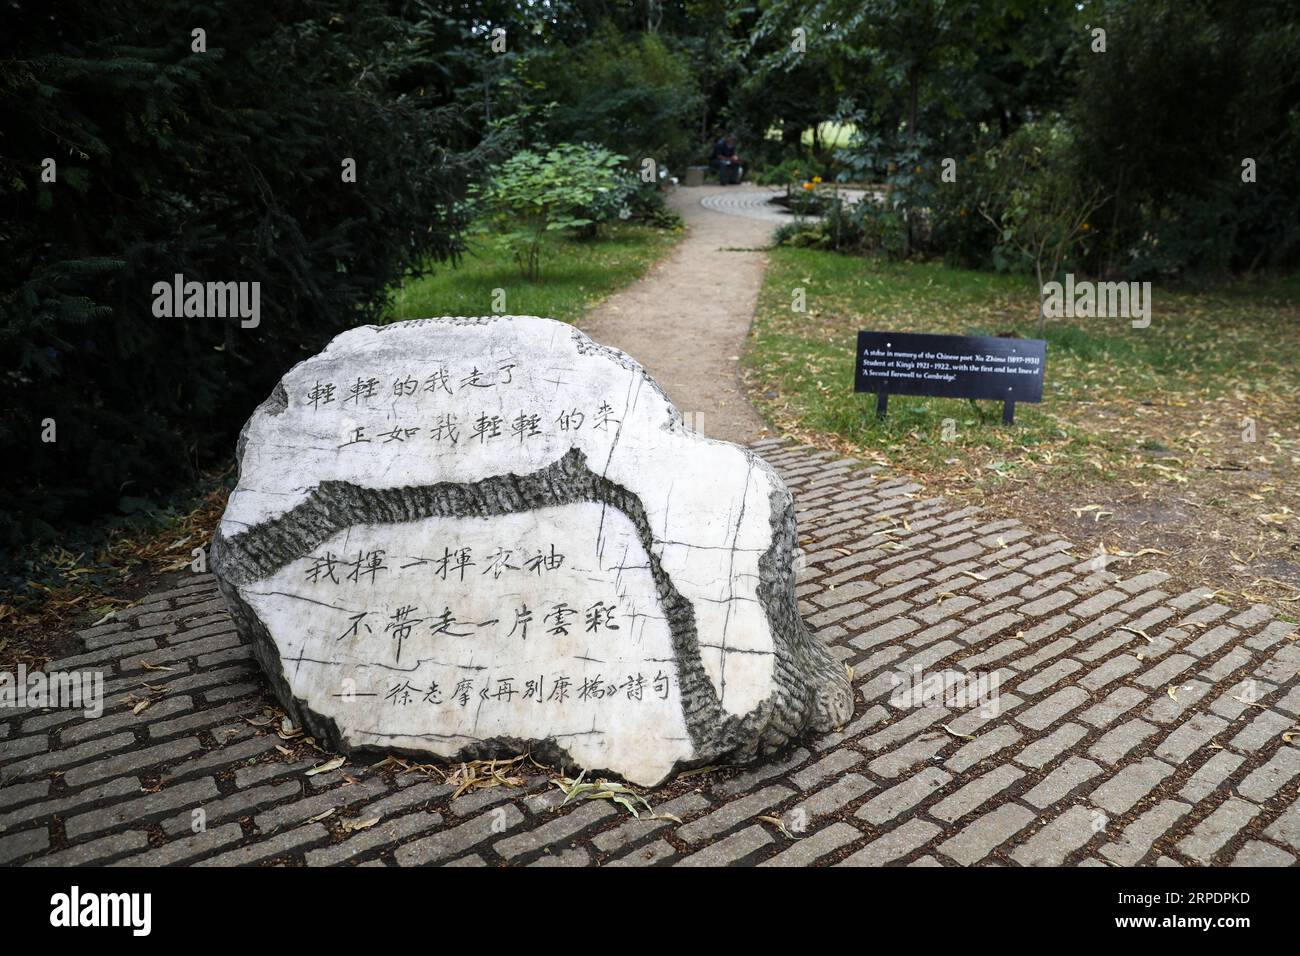 (190810) -- CAMBRIDGE, 10 agosto 2019 -- Una pietra in memoria del poeta cinese Xu Zhimo è fotografata allo Xu Zhimo Garden del King S College durante il 5 ° Cambridge Xu Zhimo Poetry and Art Festival 2019 a Cambridge, Gran Bretagna il 9 agosto 2019. IL giardino commemorativo di Xu Zhimo apre al King S College Cambridge ) BRITAIN-CAMBRIDGE-XU ZHIMO-POETRY AND ART FESTIVAL HanxYan PUBLICATIONxNOTxINxCHN Foto Stock